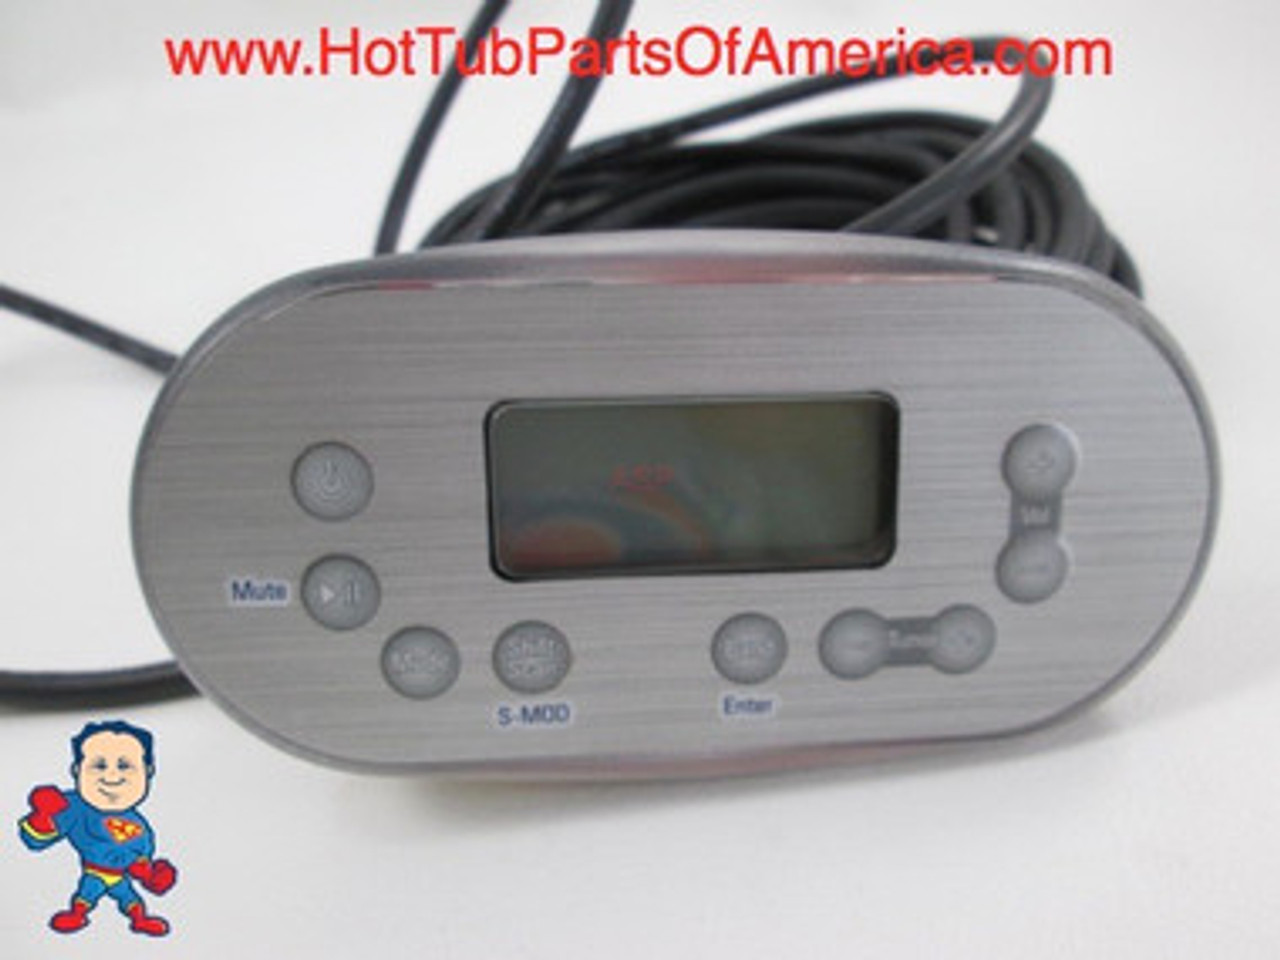 Balboa MAAX Spa Hot Tub Topside Audio Display 9 Button MSR 2007 Control